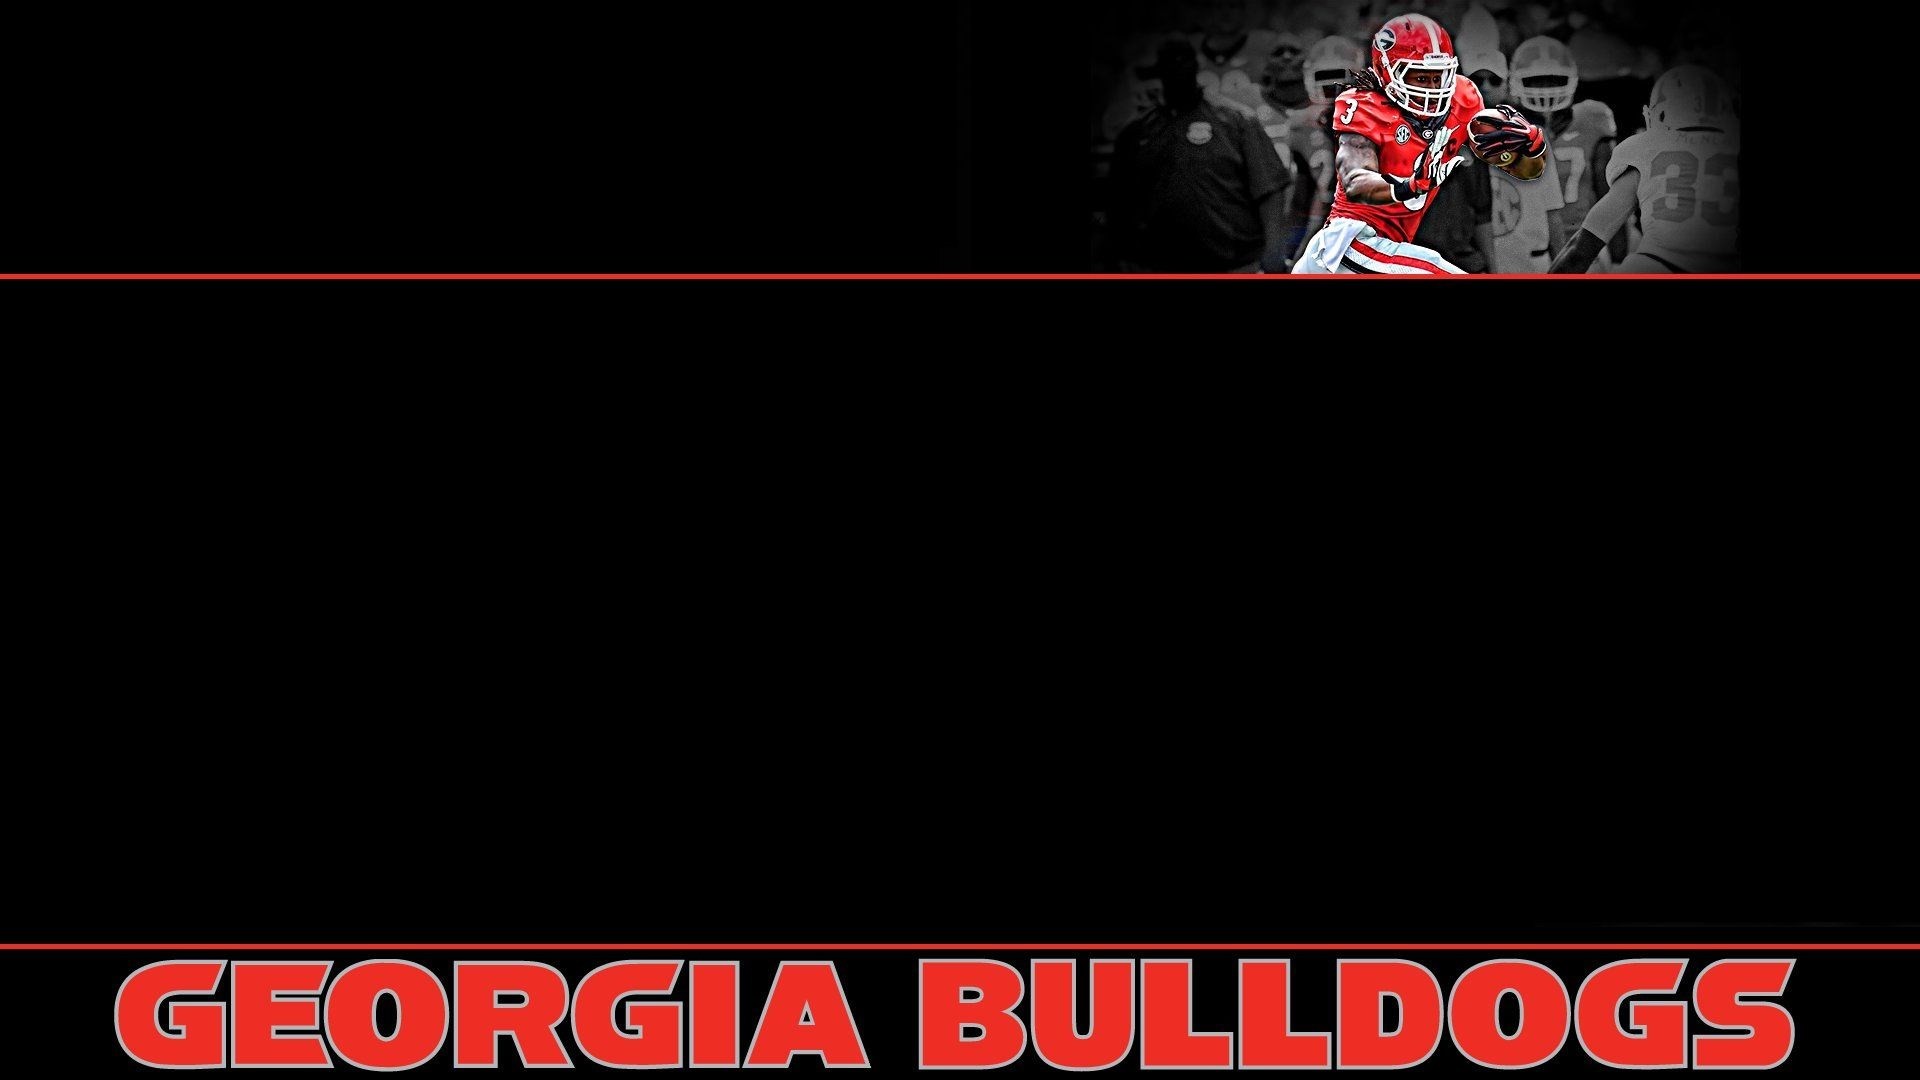 Georgia Bulldogs Wallpaper and Screensavers (52+ images)